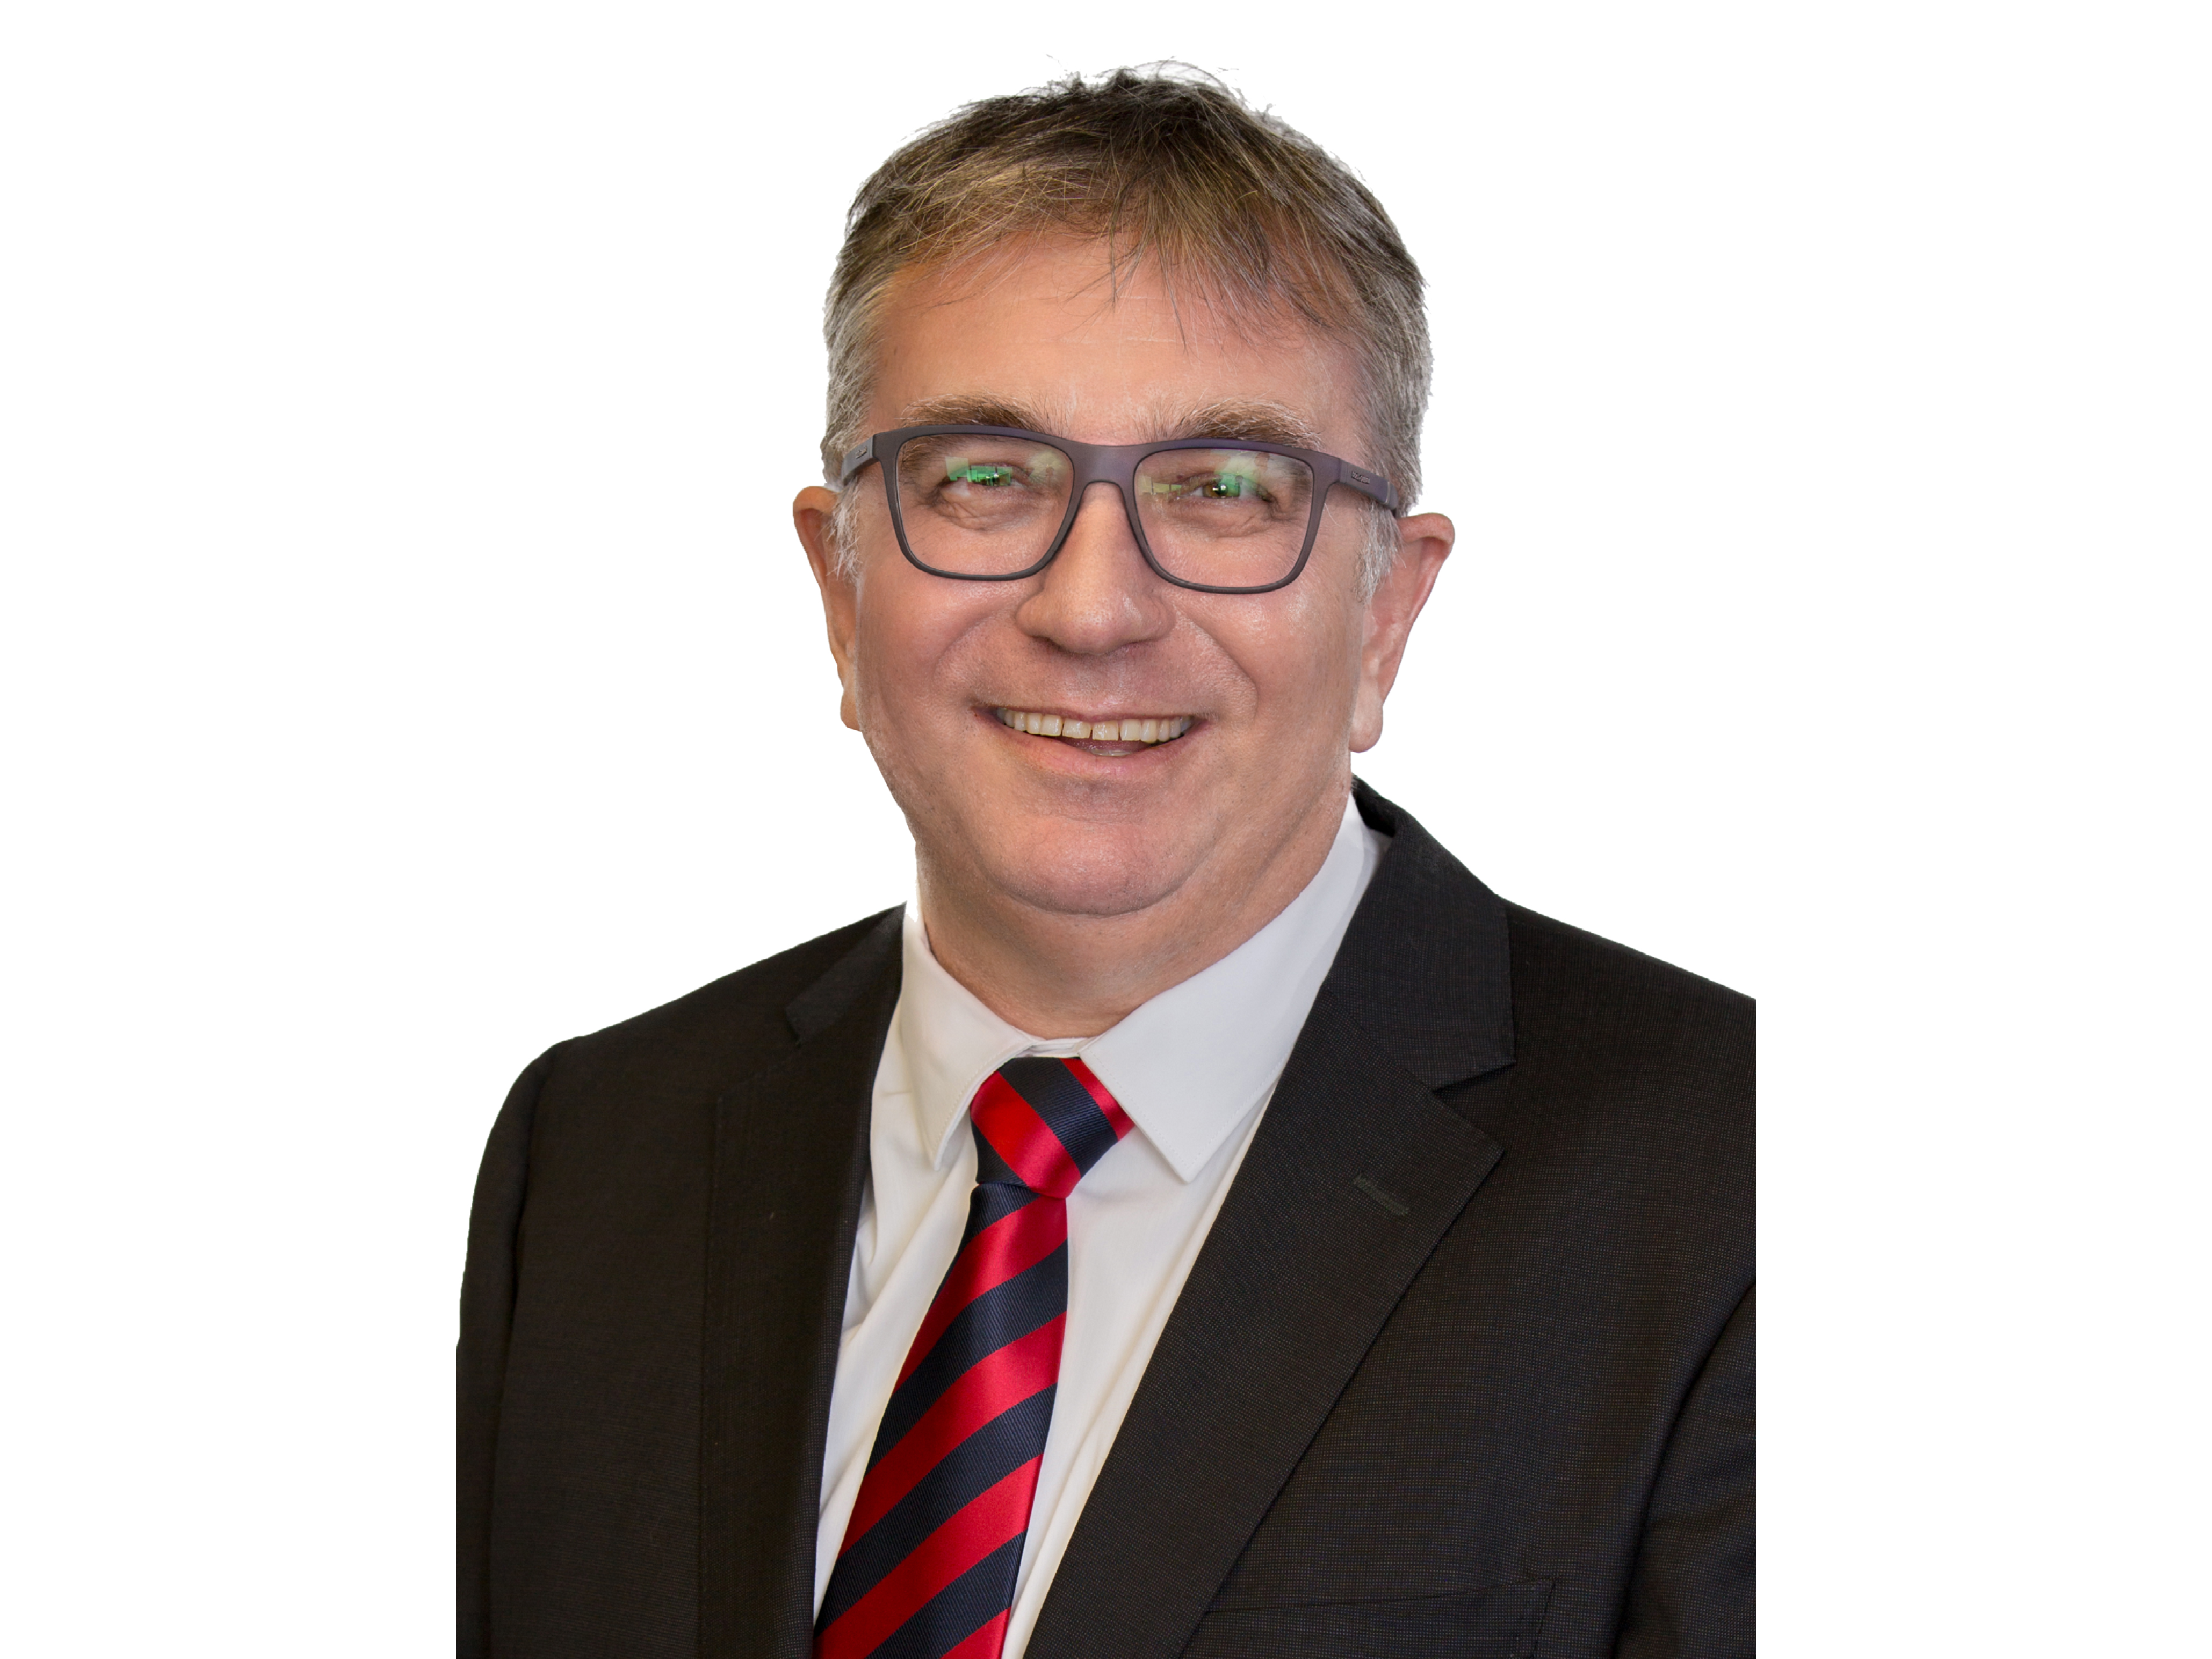 Tony Kidd, General Manager - NAI Harcourts